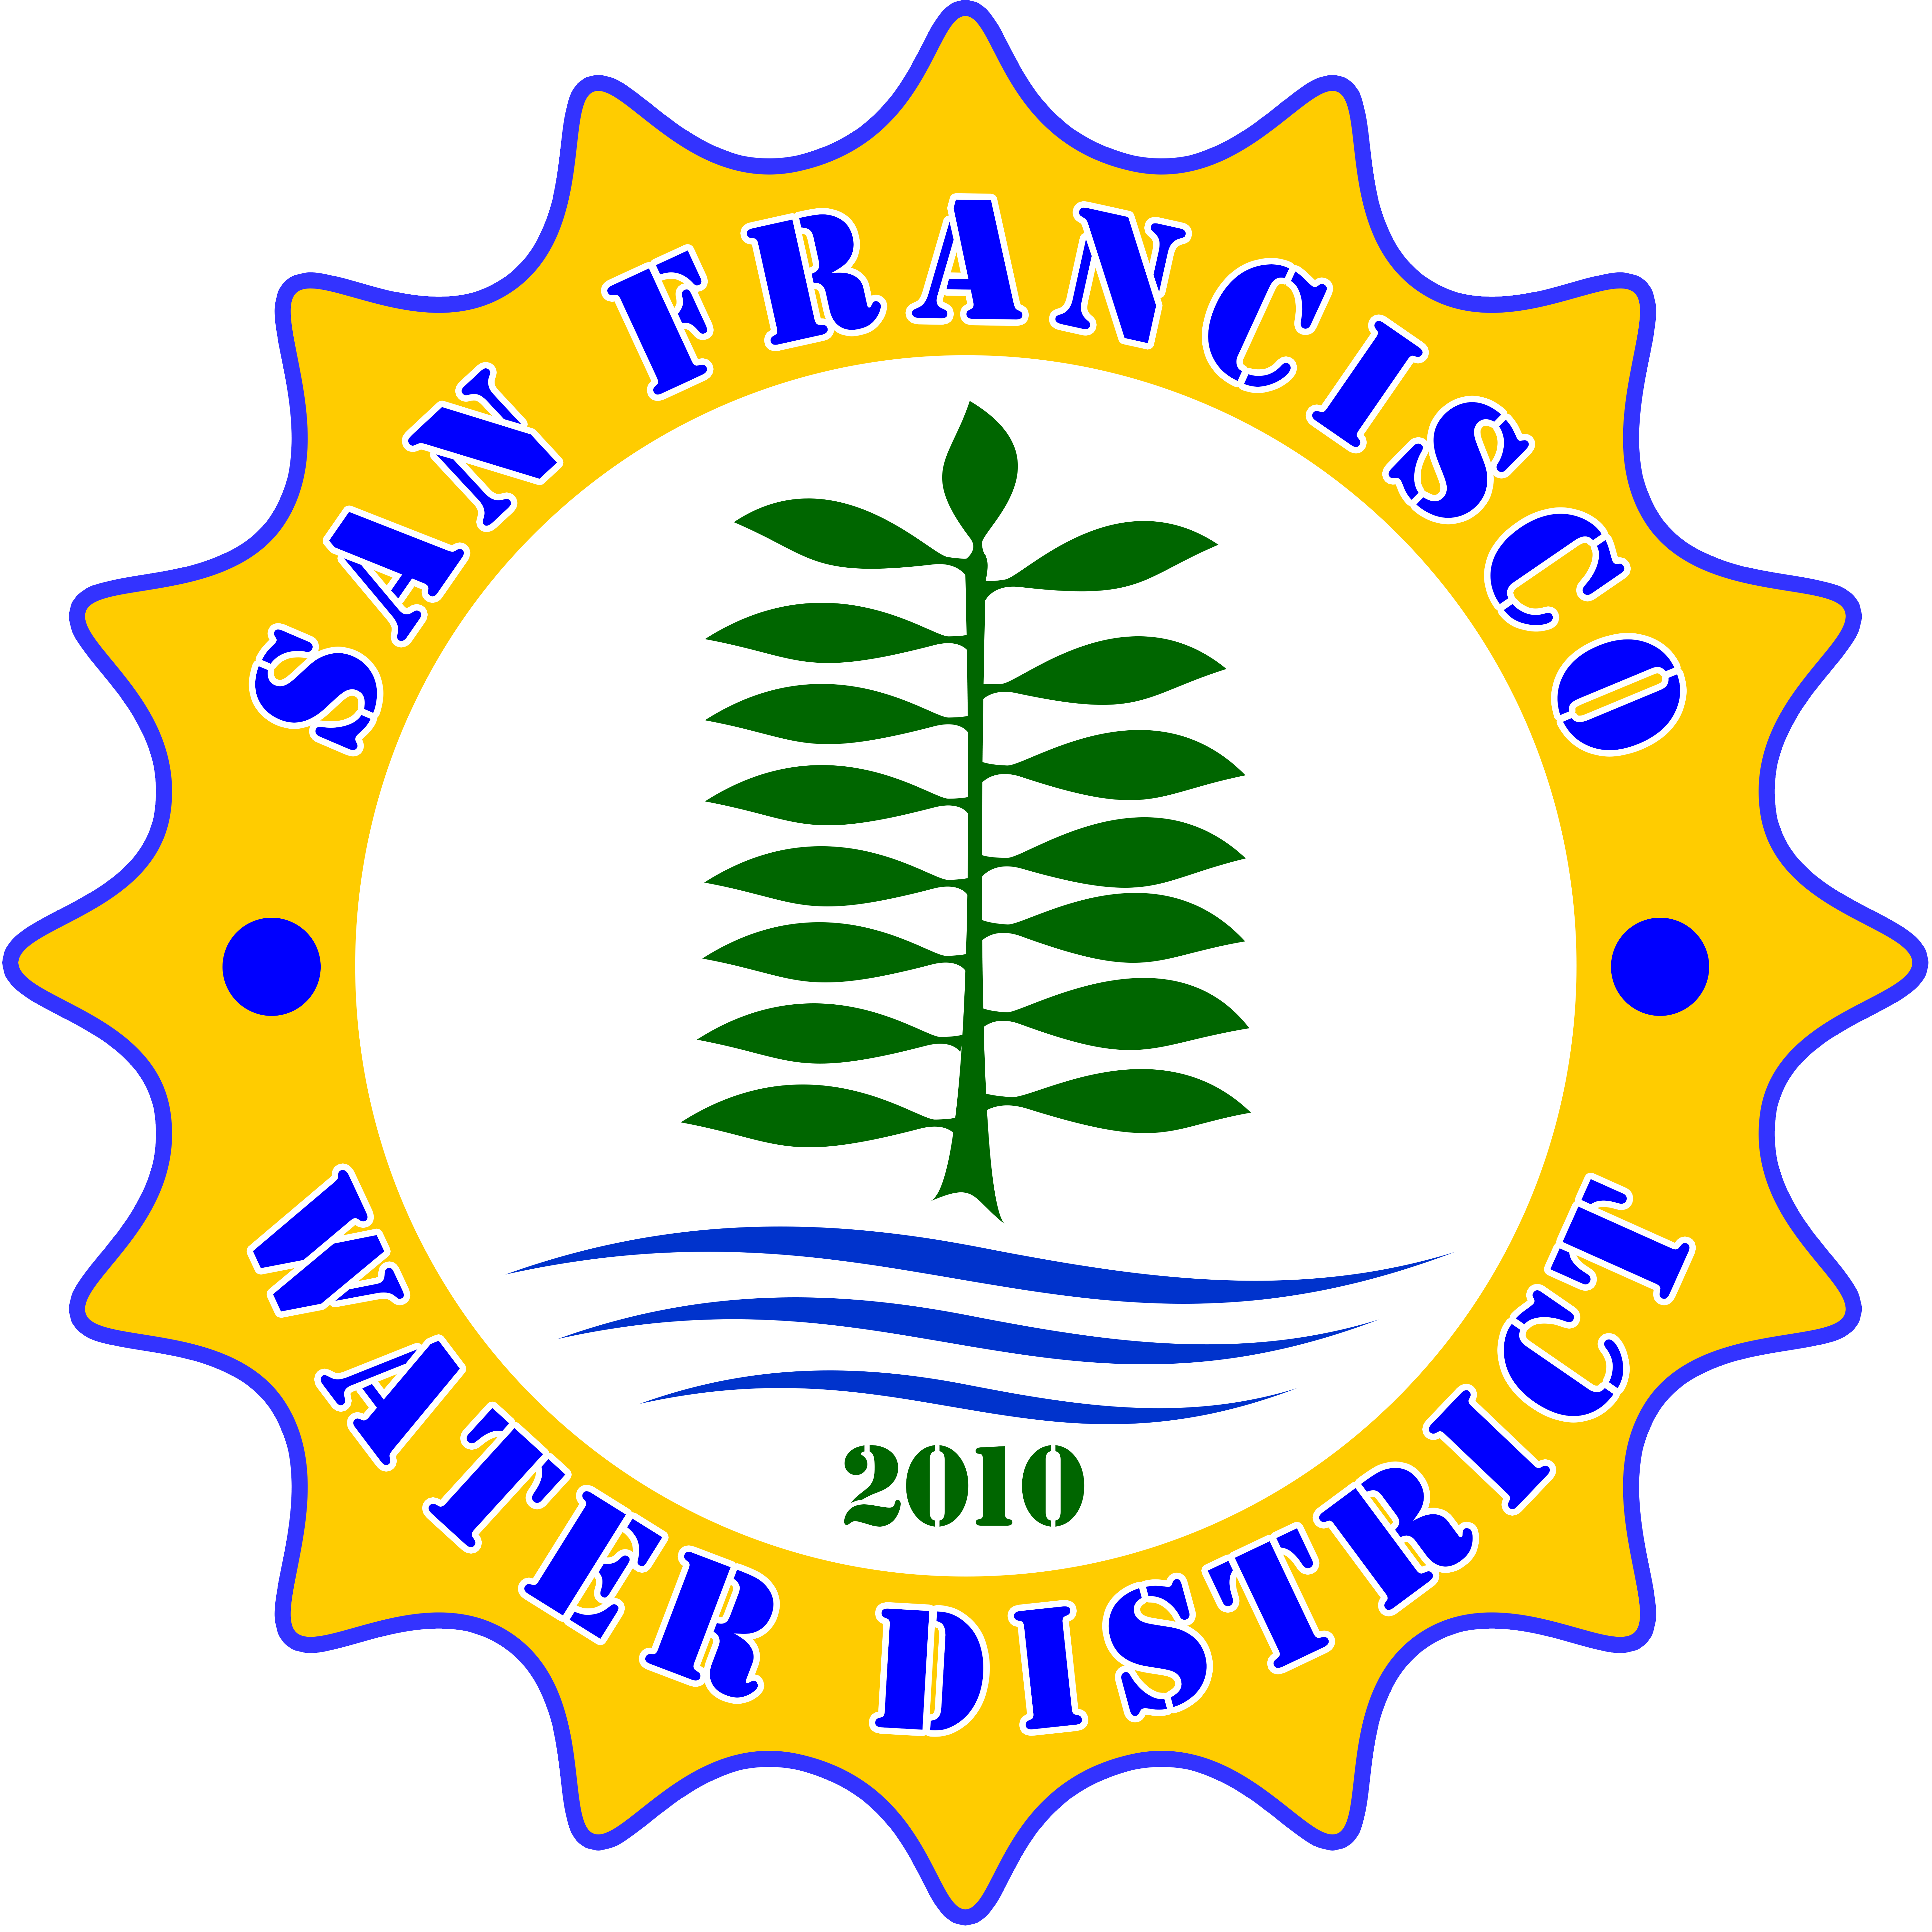 SAN FRANCISCO WATER DISTRICT (QUEZON)